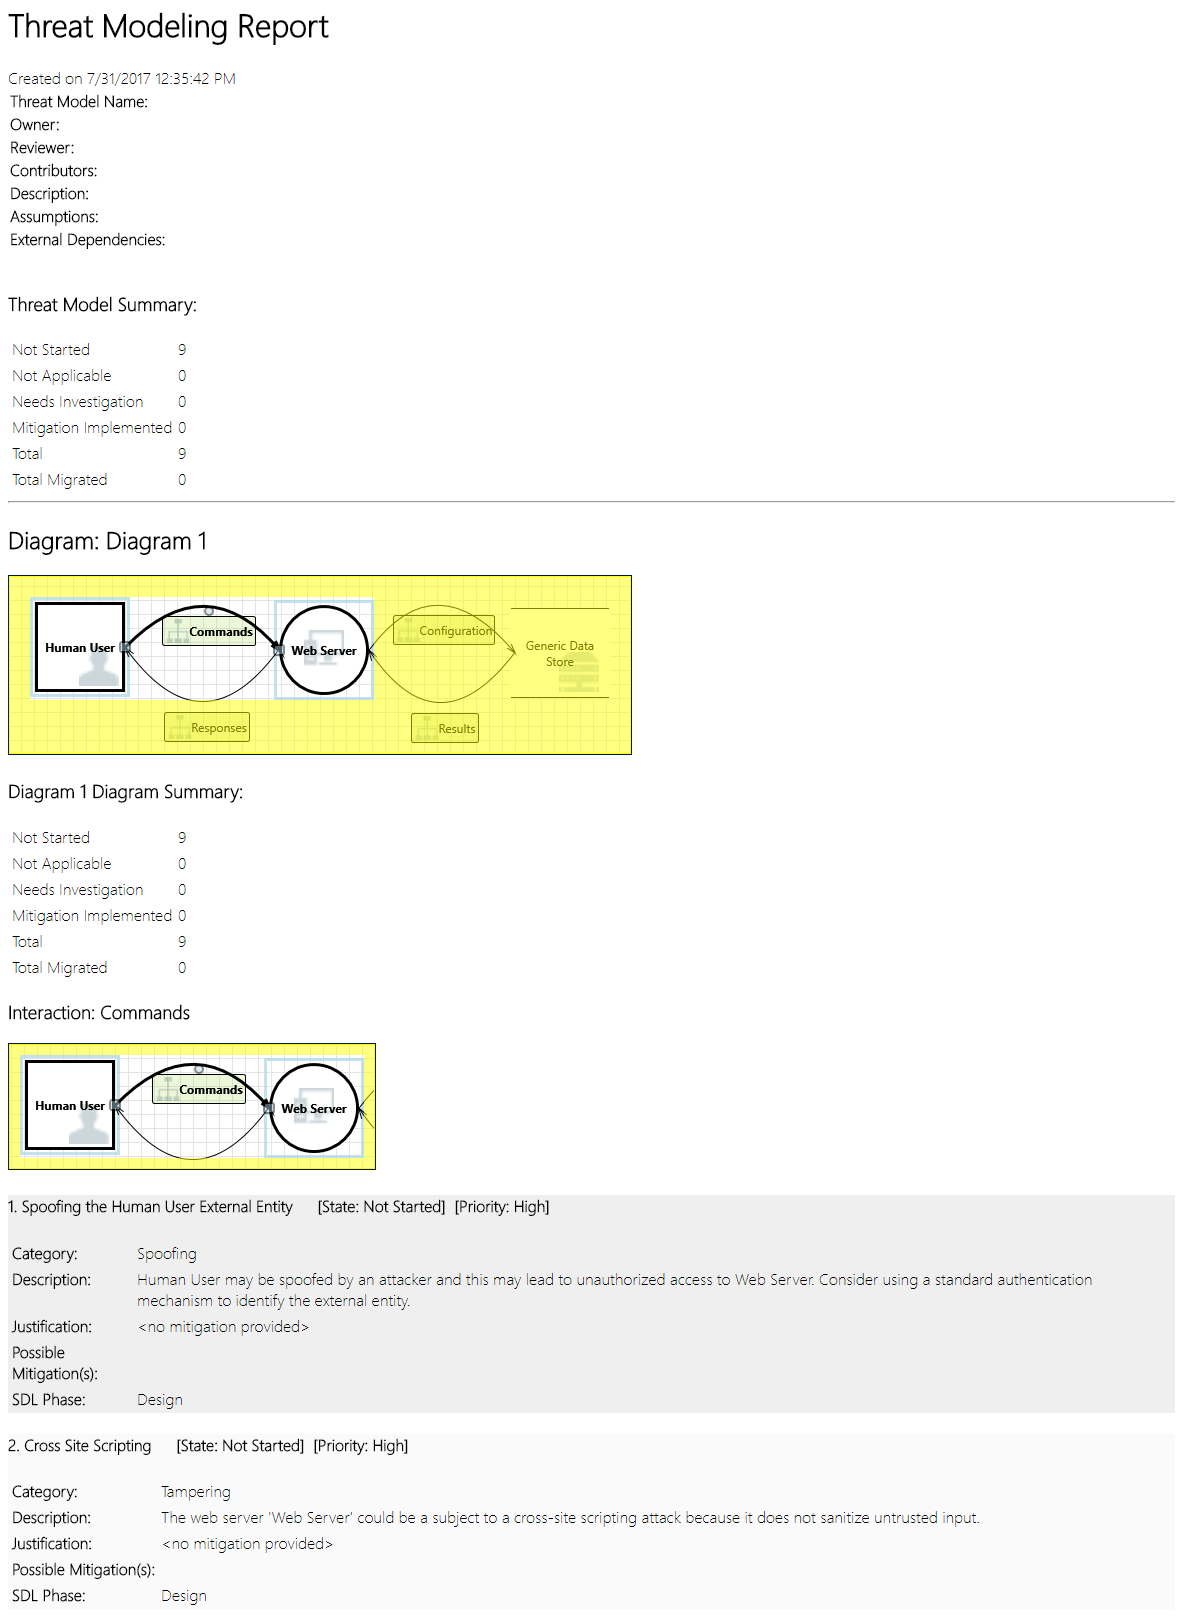 Screenshot che mostra un esempio di report di modellazione delle minacce, tra cui un riepilogo, diagrammi e altre informazioni.